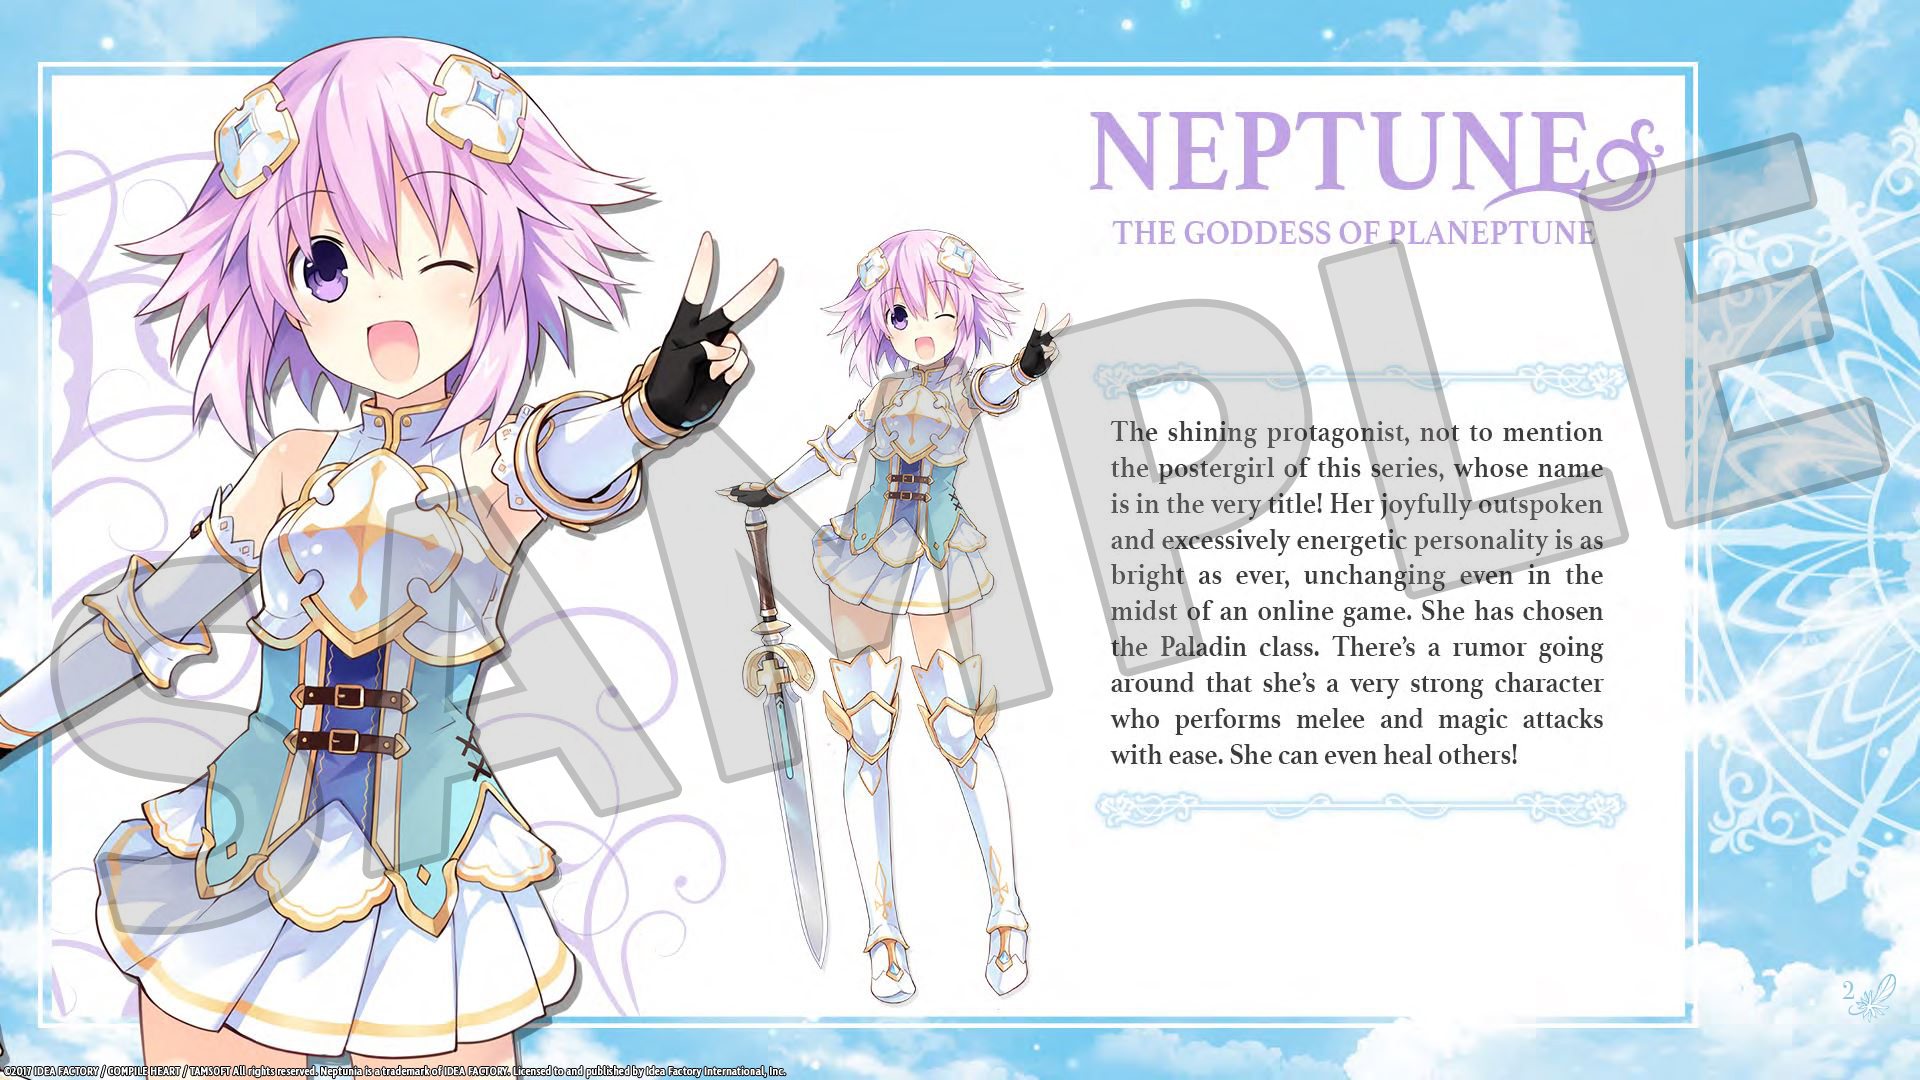 Cyberdimension Neptunia: 4 Goddesses Online - Deluxe Pack DLC Steam CD Key 1.69$